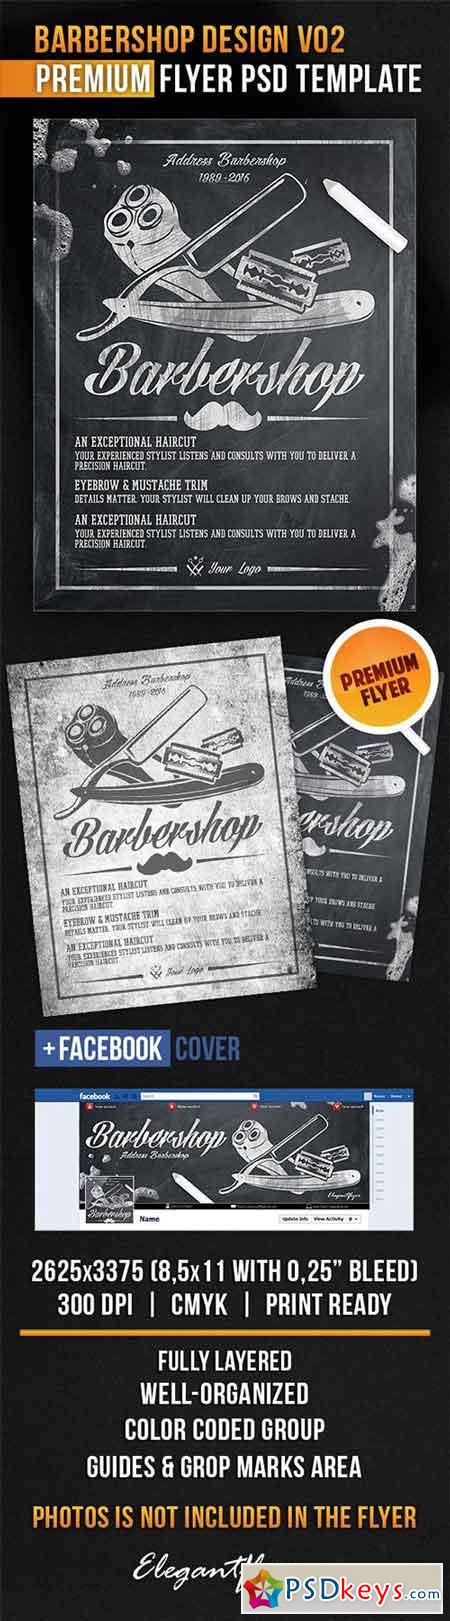 Barbershop Design V02 Flyer PSD Template + Facebook Cover